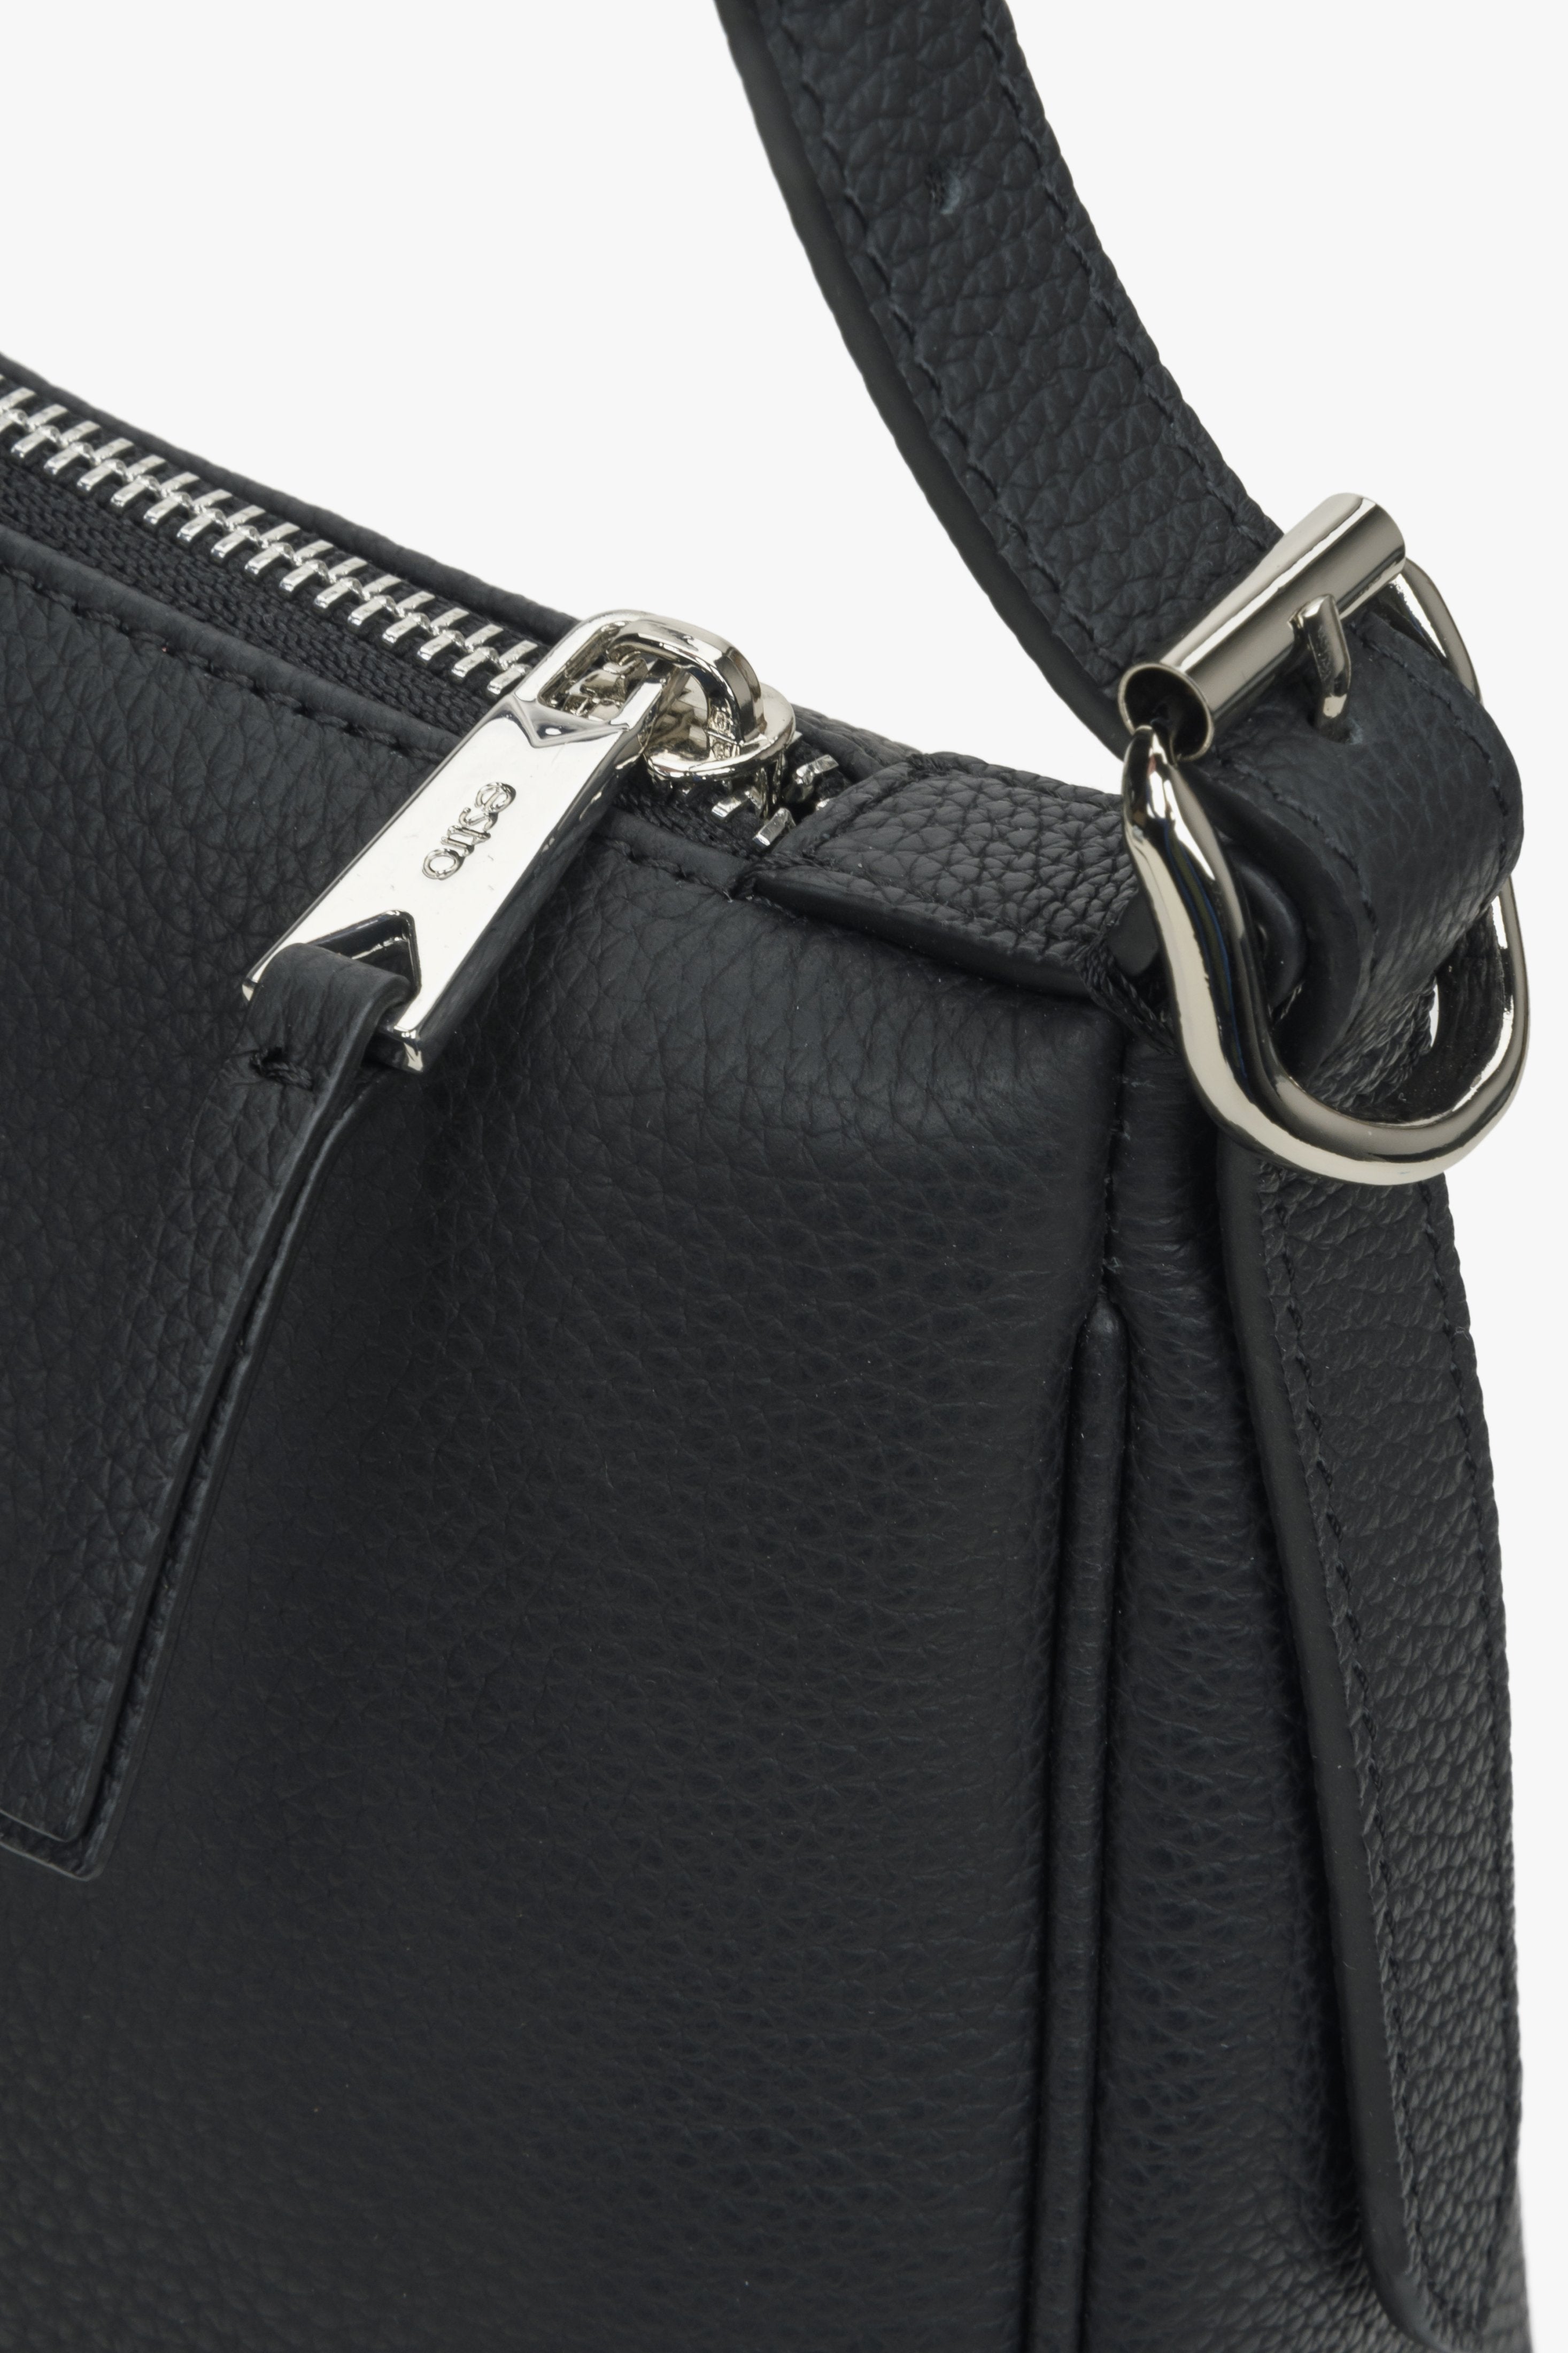 Skórzana torebka na ramię w kolorze czarnym - zbliżenie na detale.